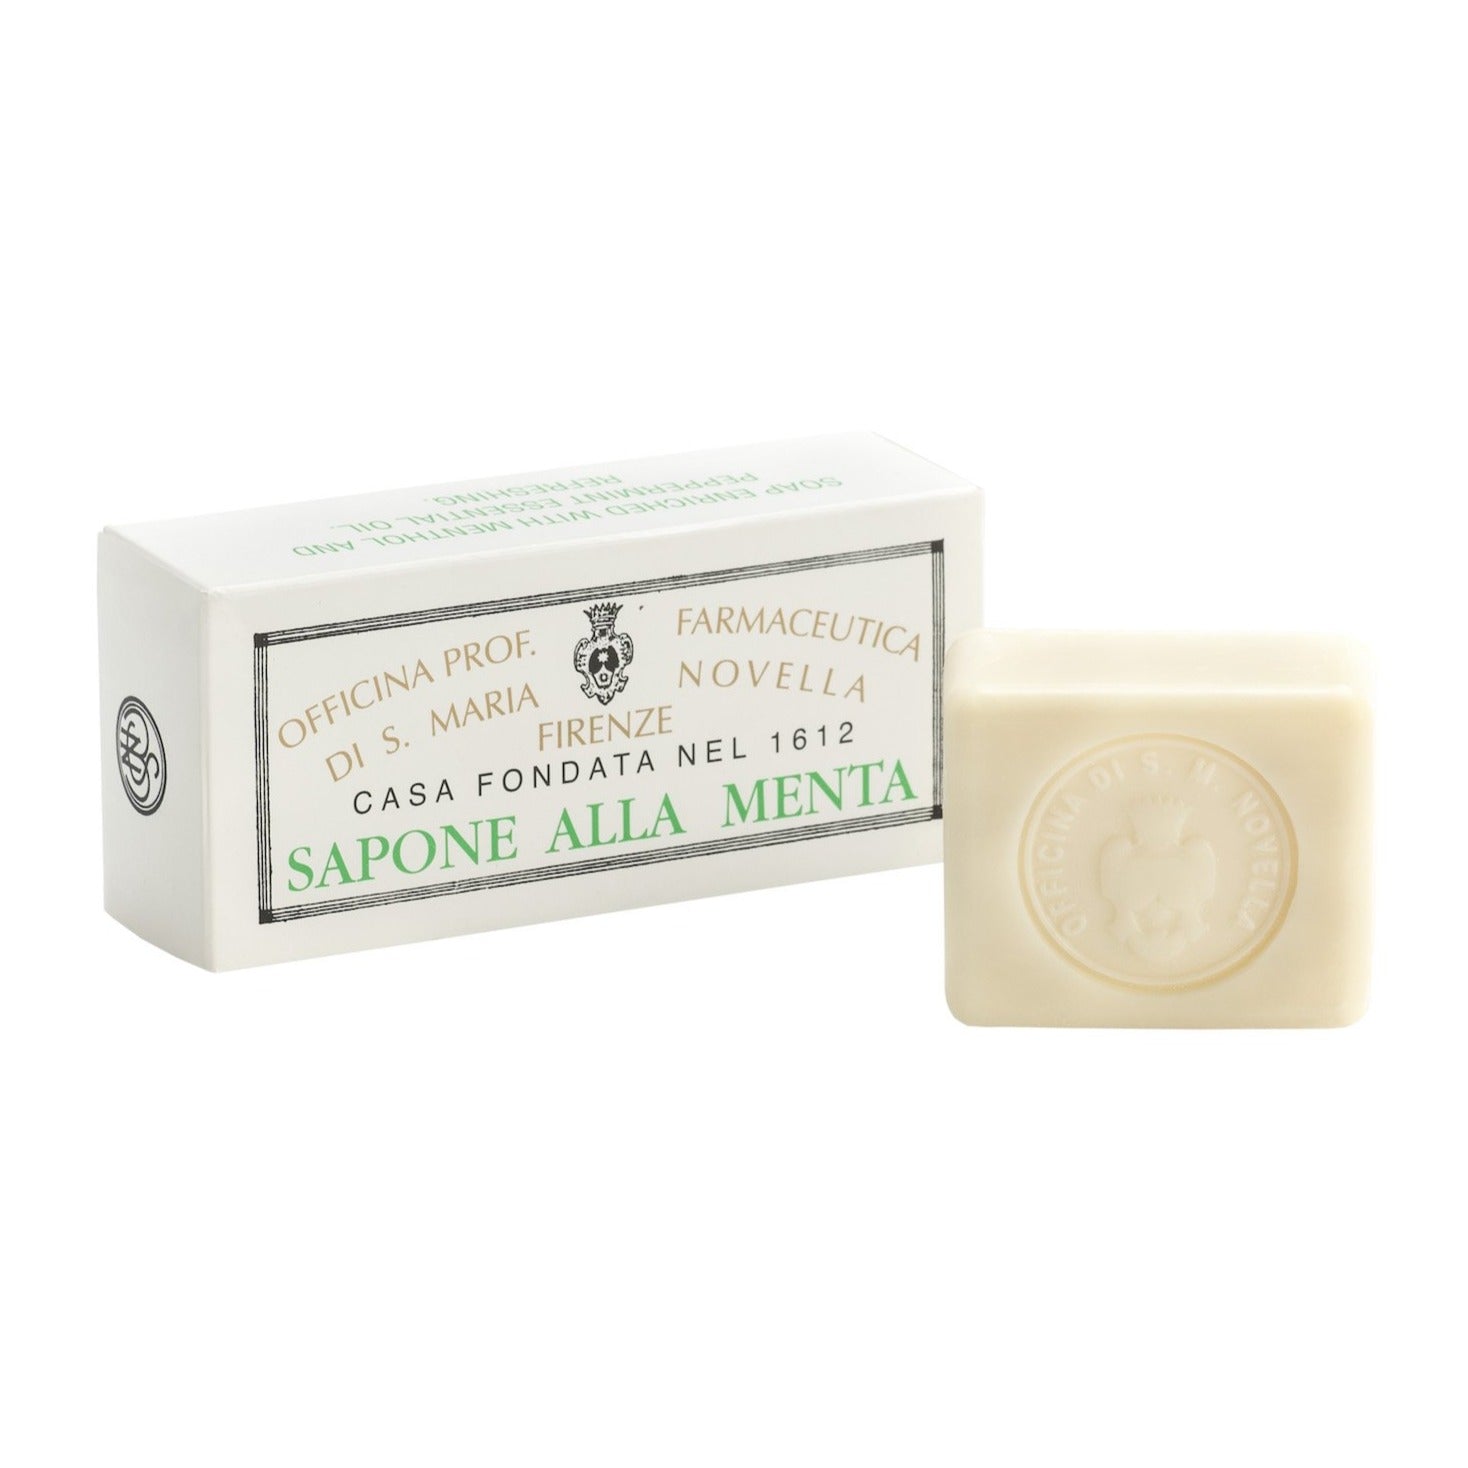 Santa Maria Novella Mint Soap box